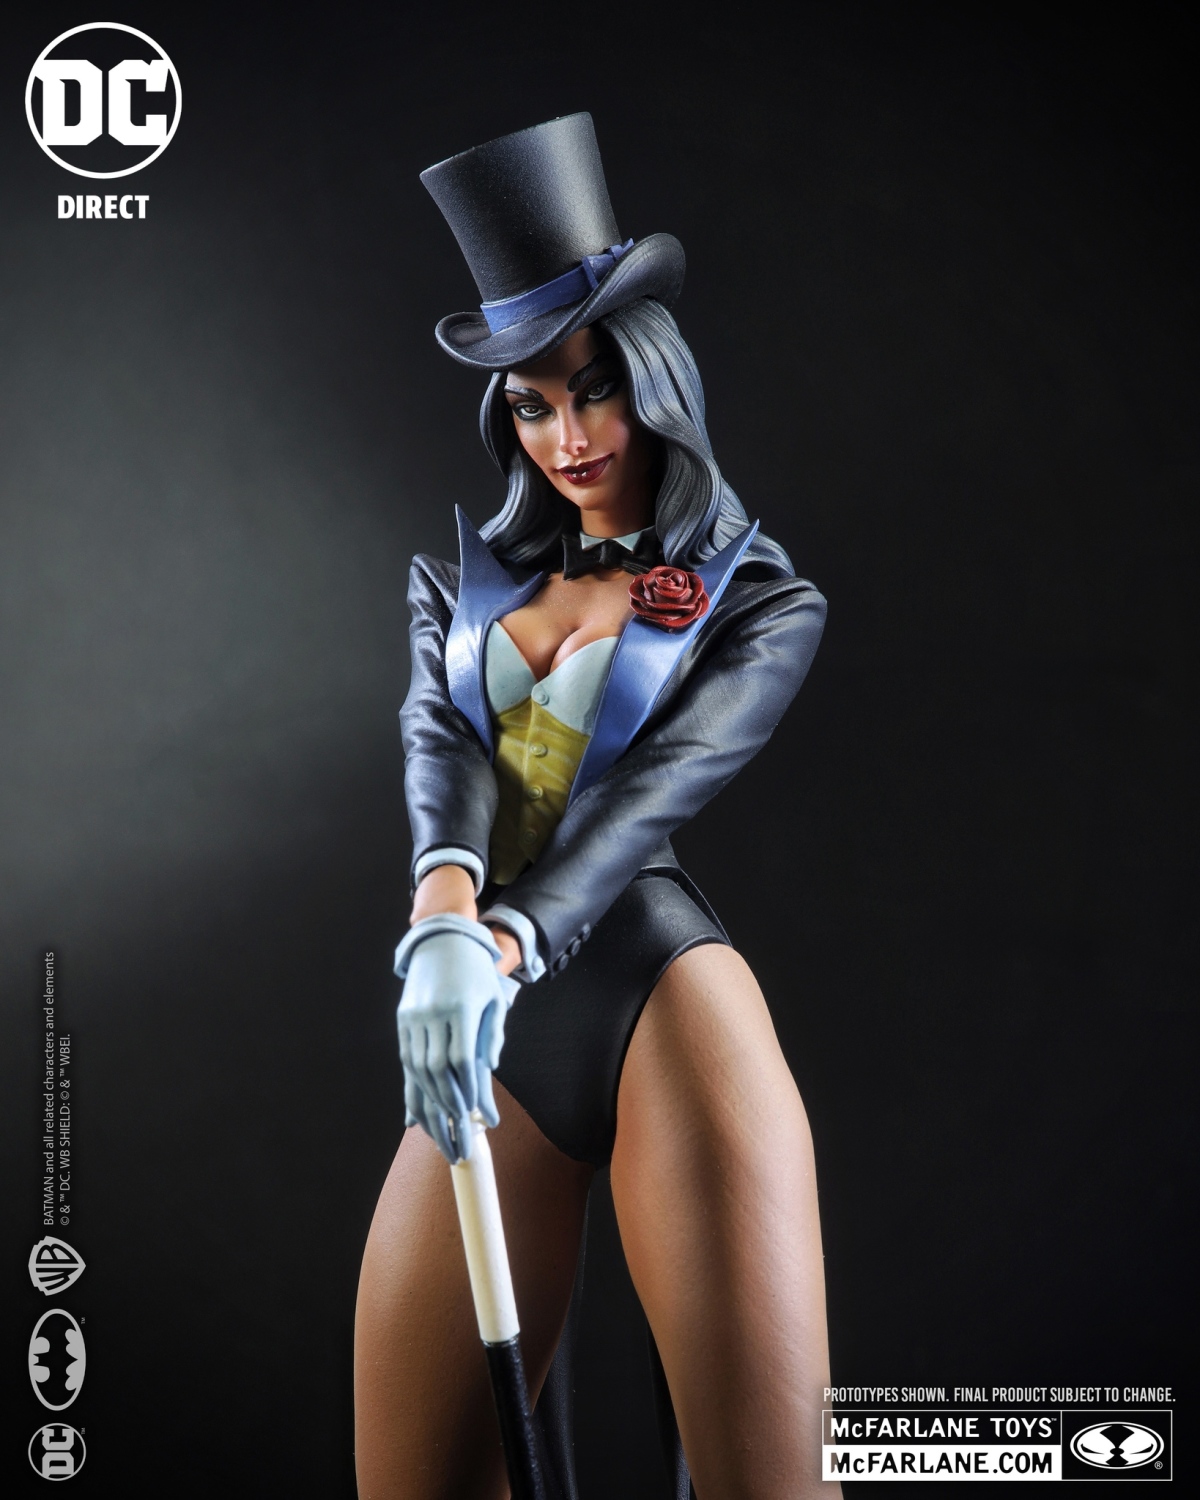 麥法蘭 DC Direct DC 封面女郎系列「扎坦娜 (Zatanna) by J. Scott Campbell」1/8 比例全身雕像